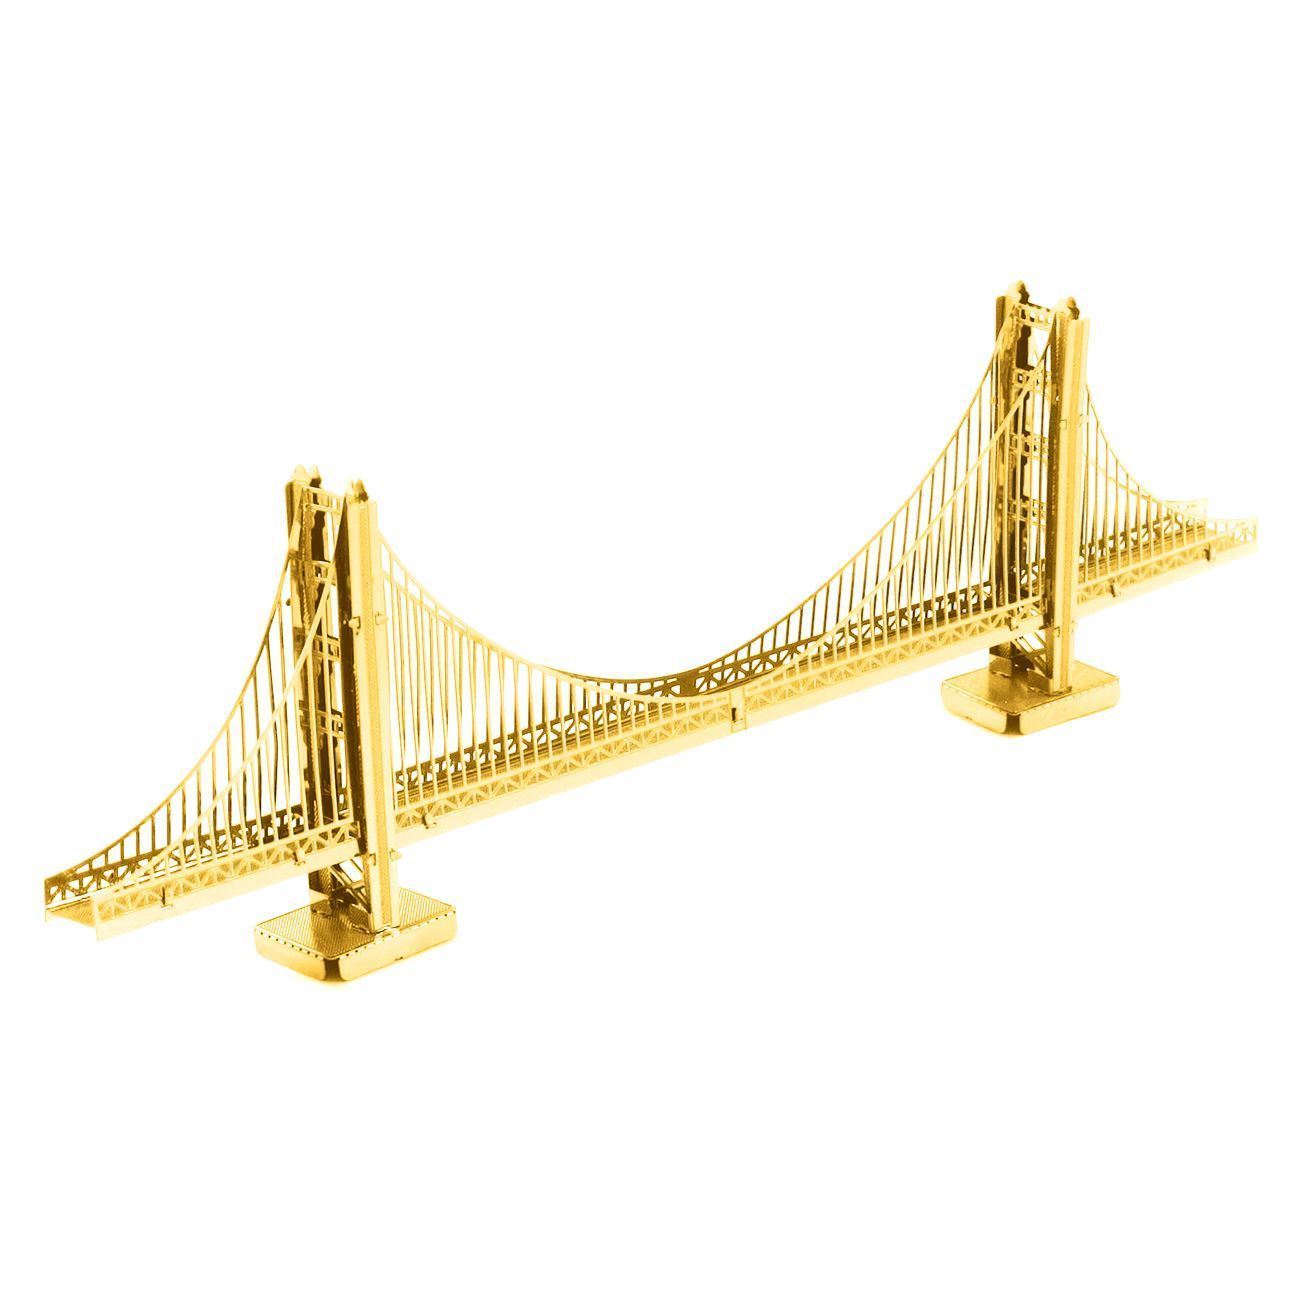 Metal Earth Golden Gate Bridge GOLD Ver 3D Metal  Model Tweezer  01112 